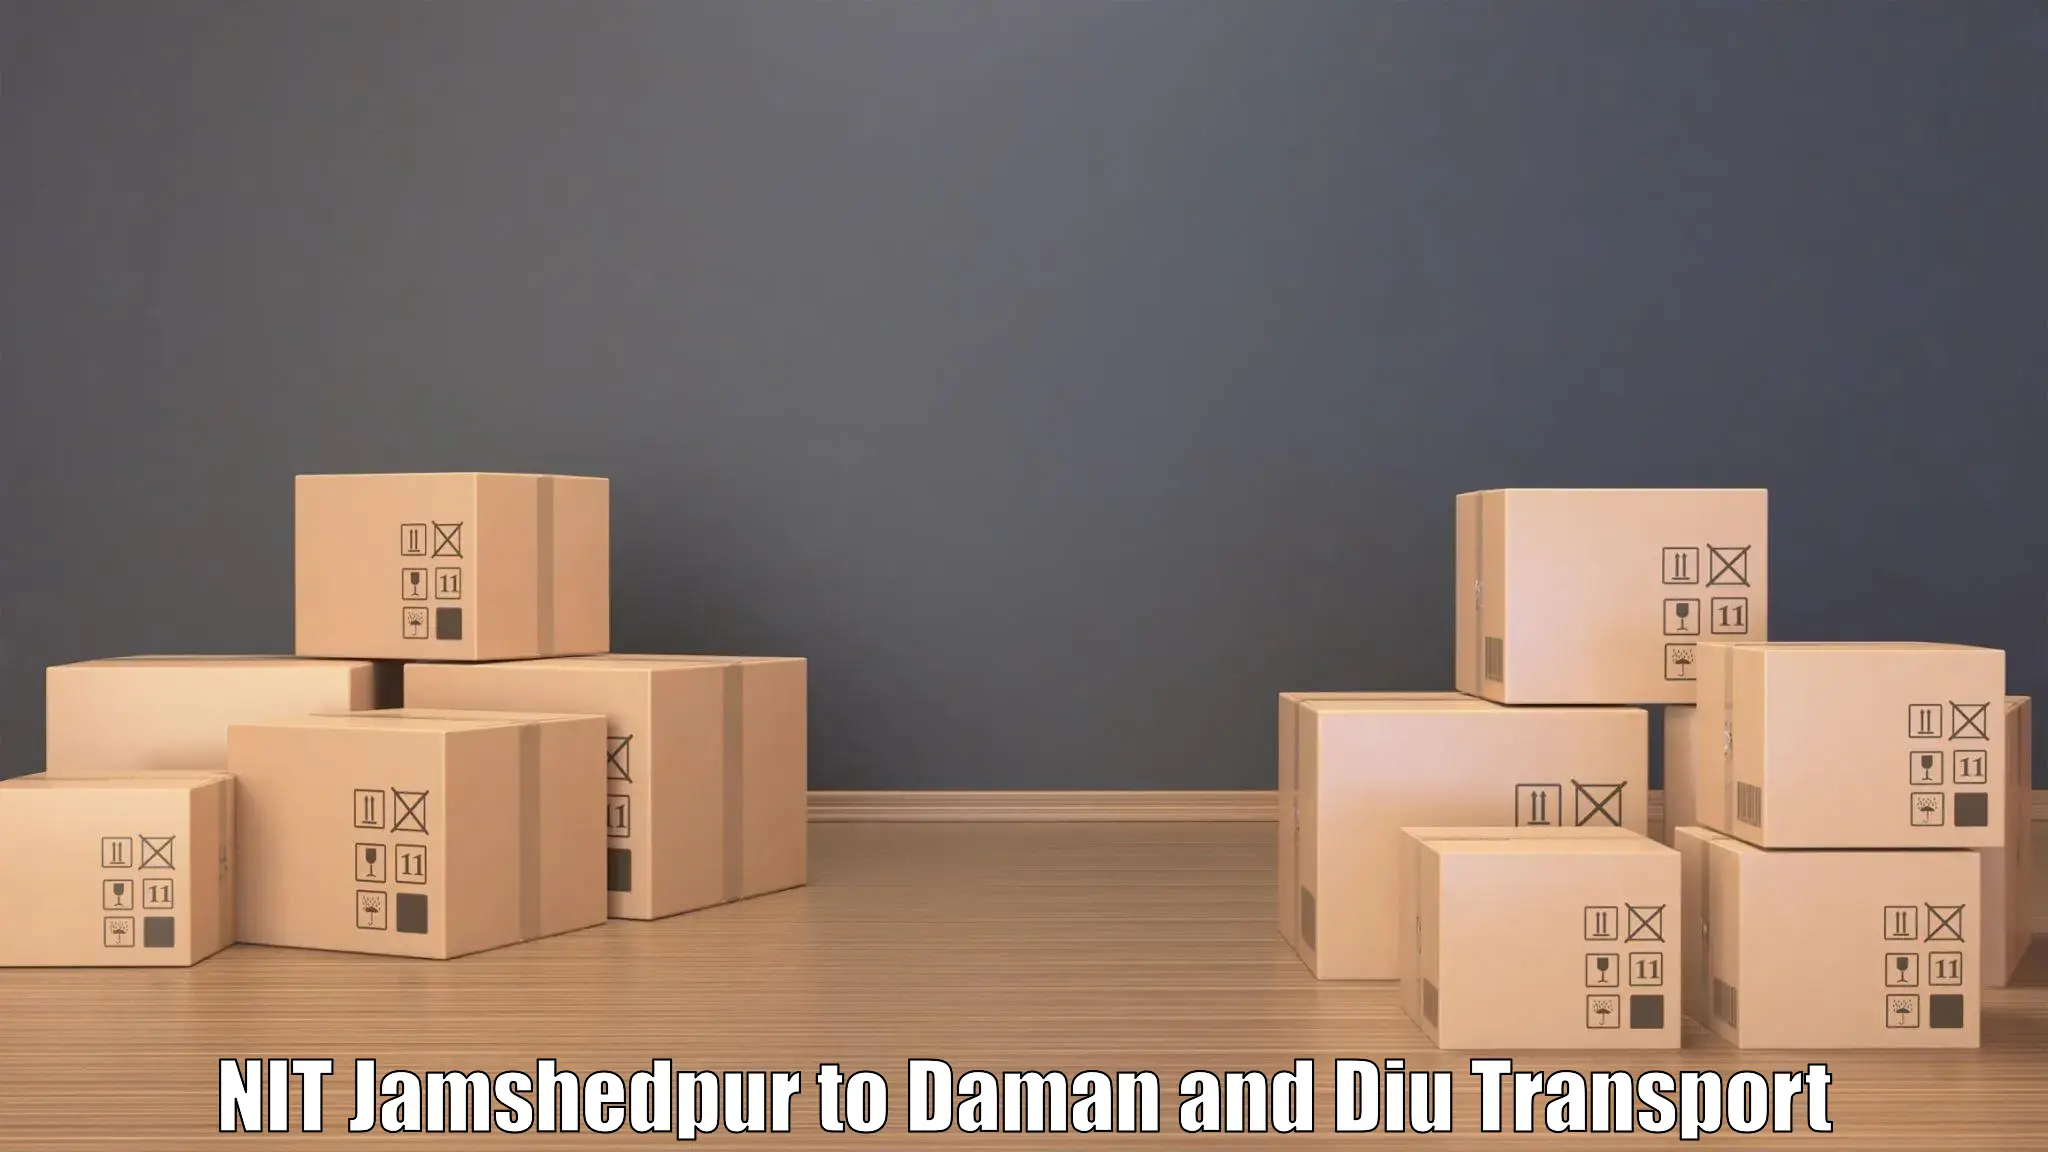 Bike transfer NIT Jamshedpur to Daman